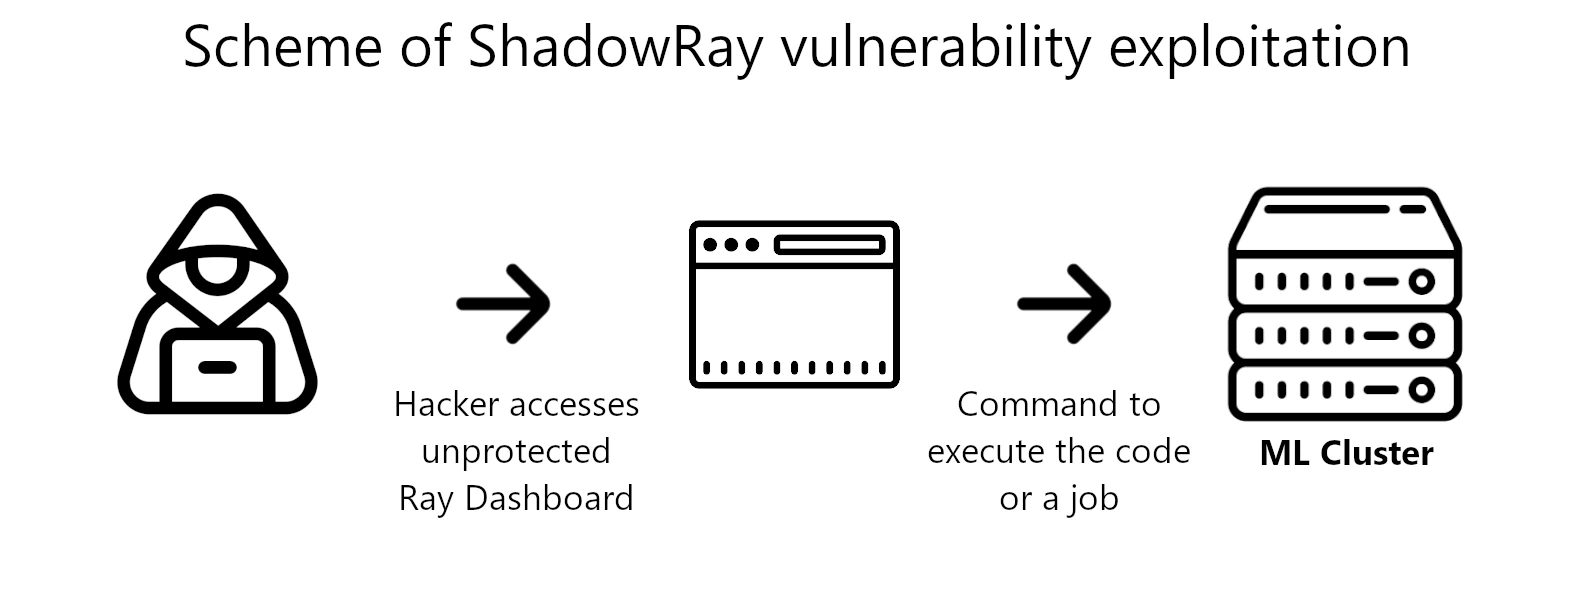 ShadowRay vulnerability exploitation scheme